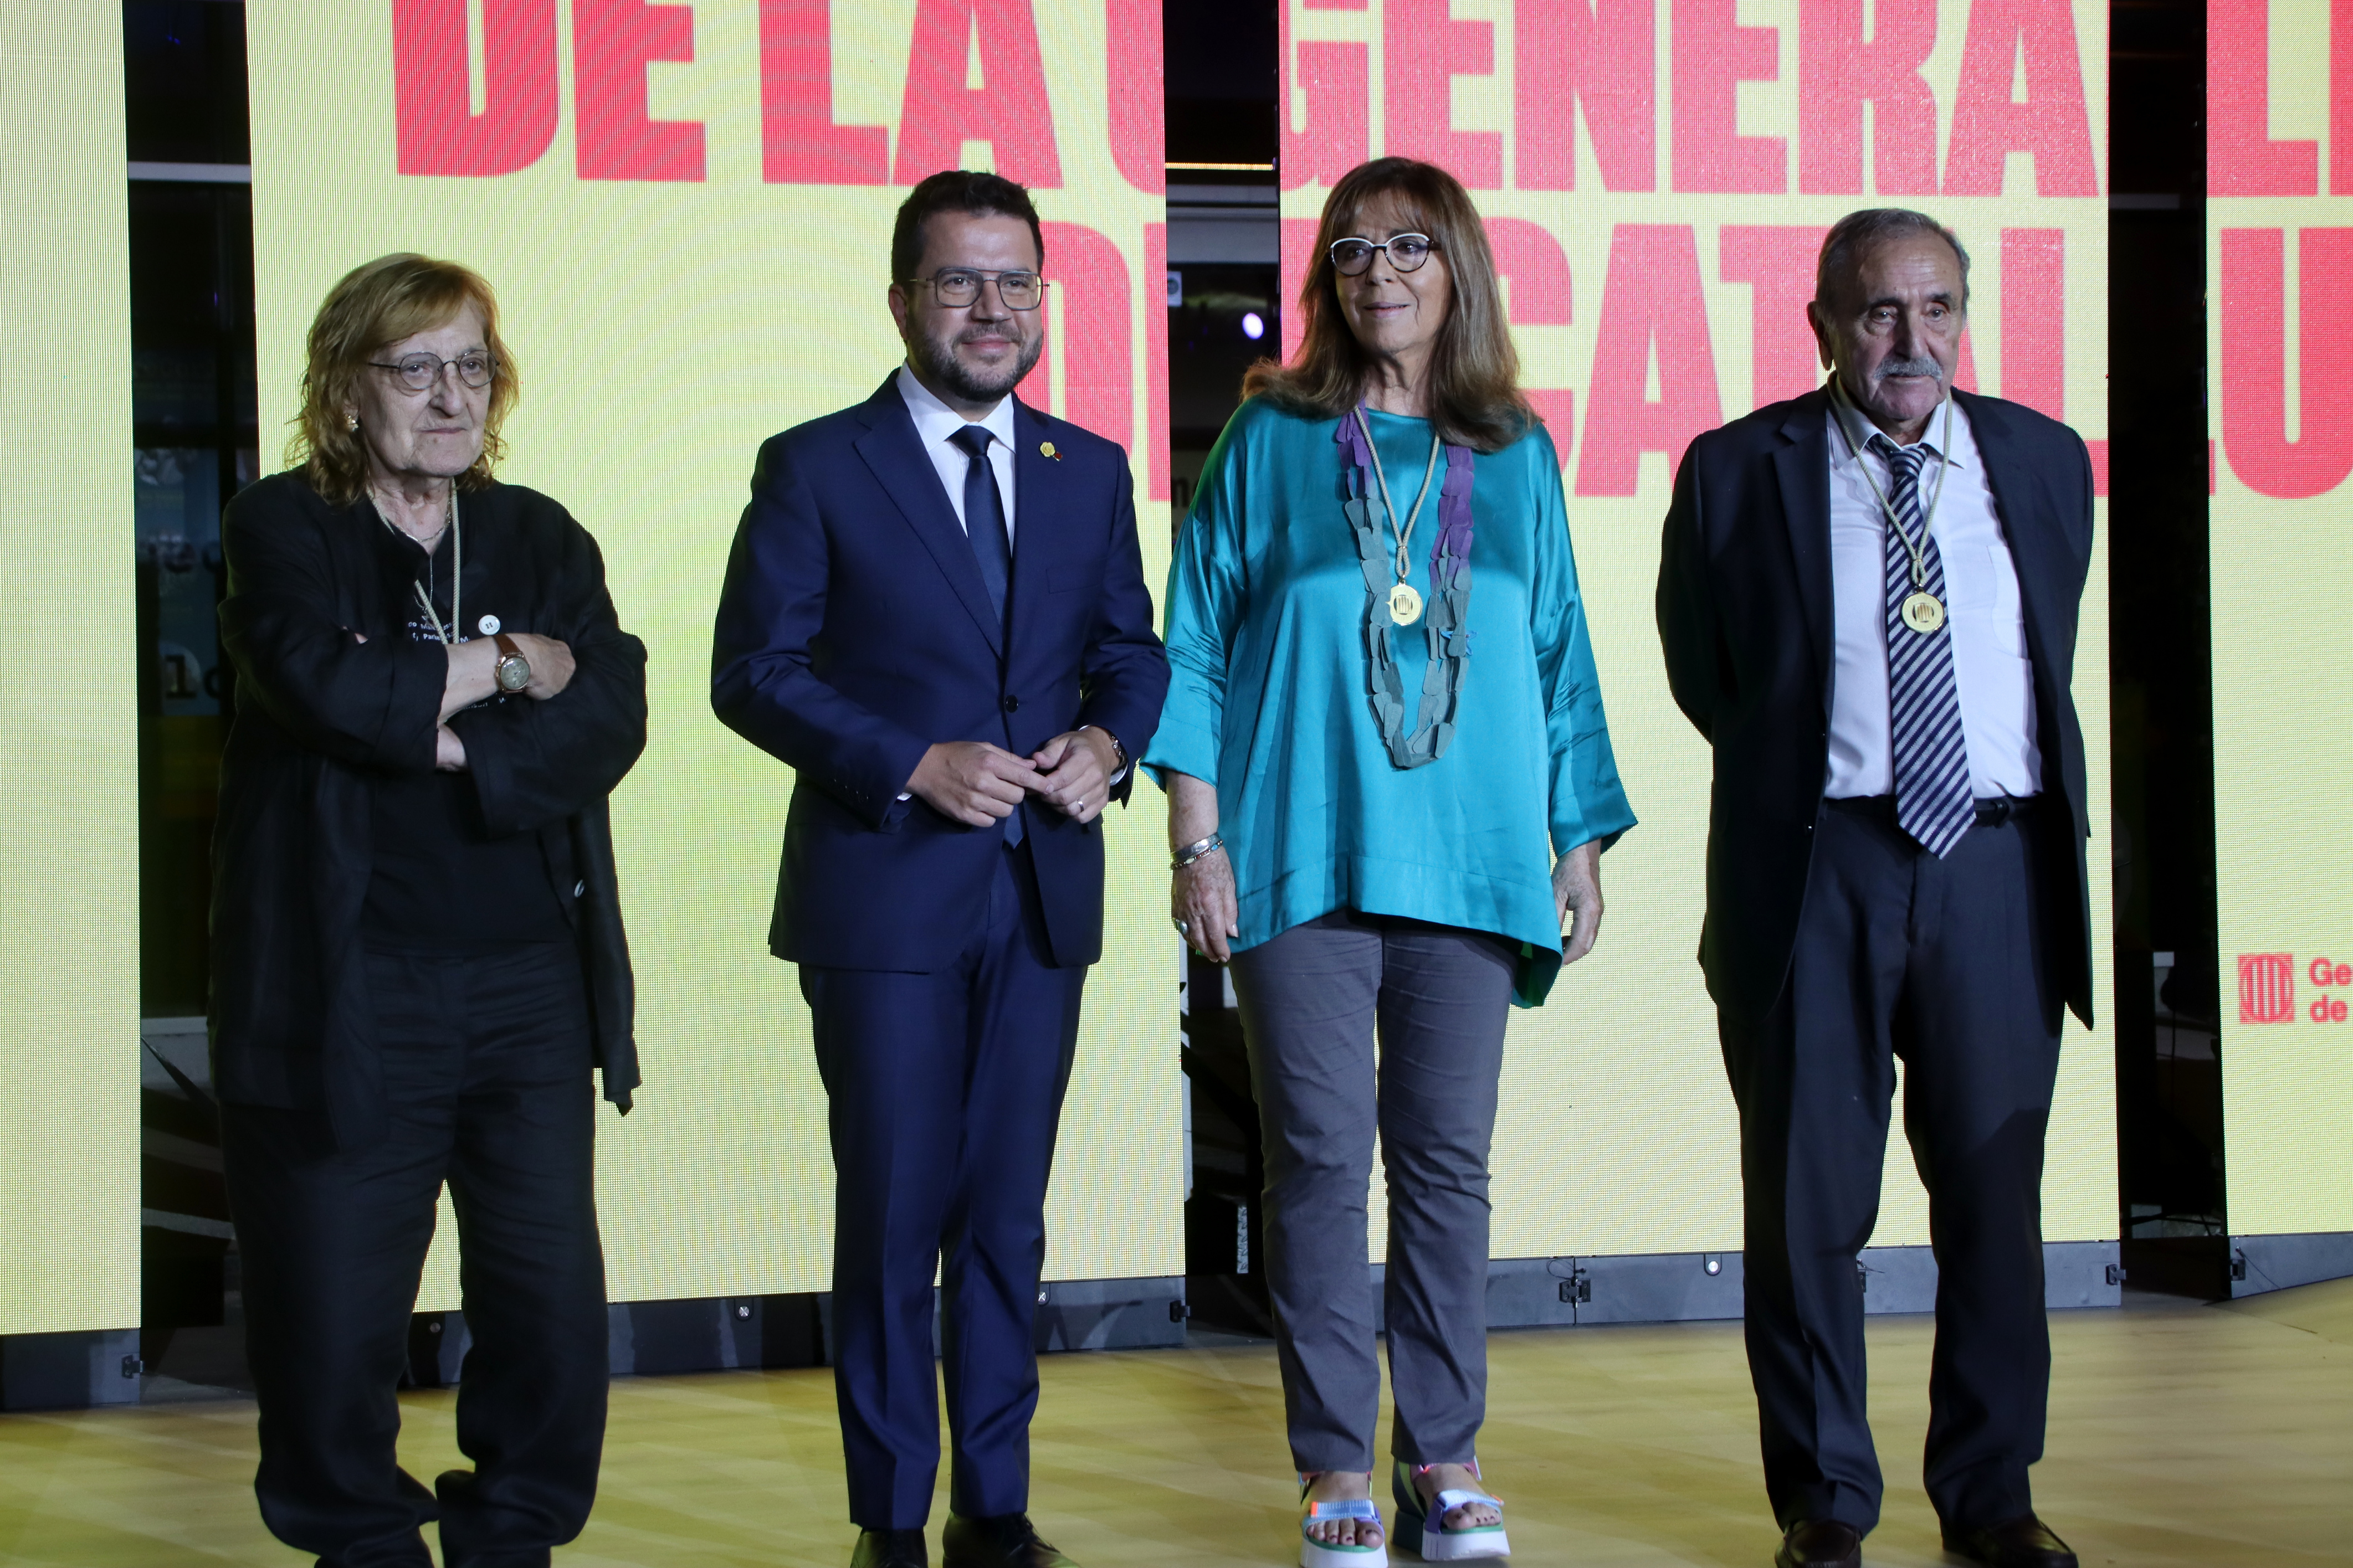 Maria del Mar Bonet, Marta Pessarrodona i Eliseu Climent reben les Medalles d'Or de la Generalitat